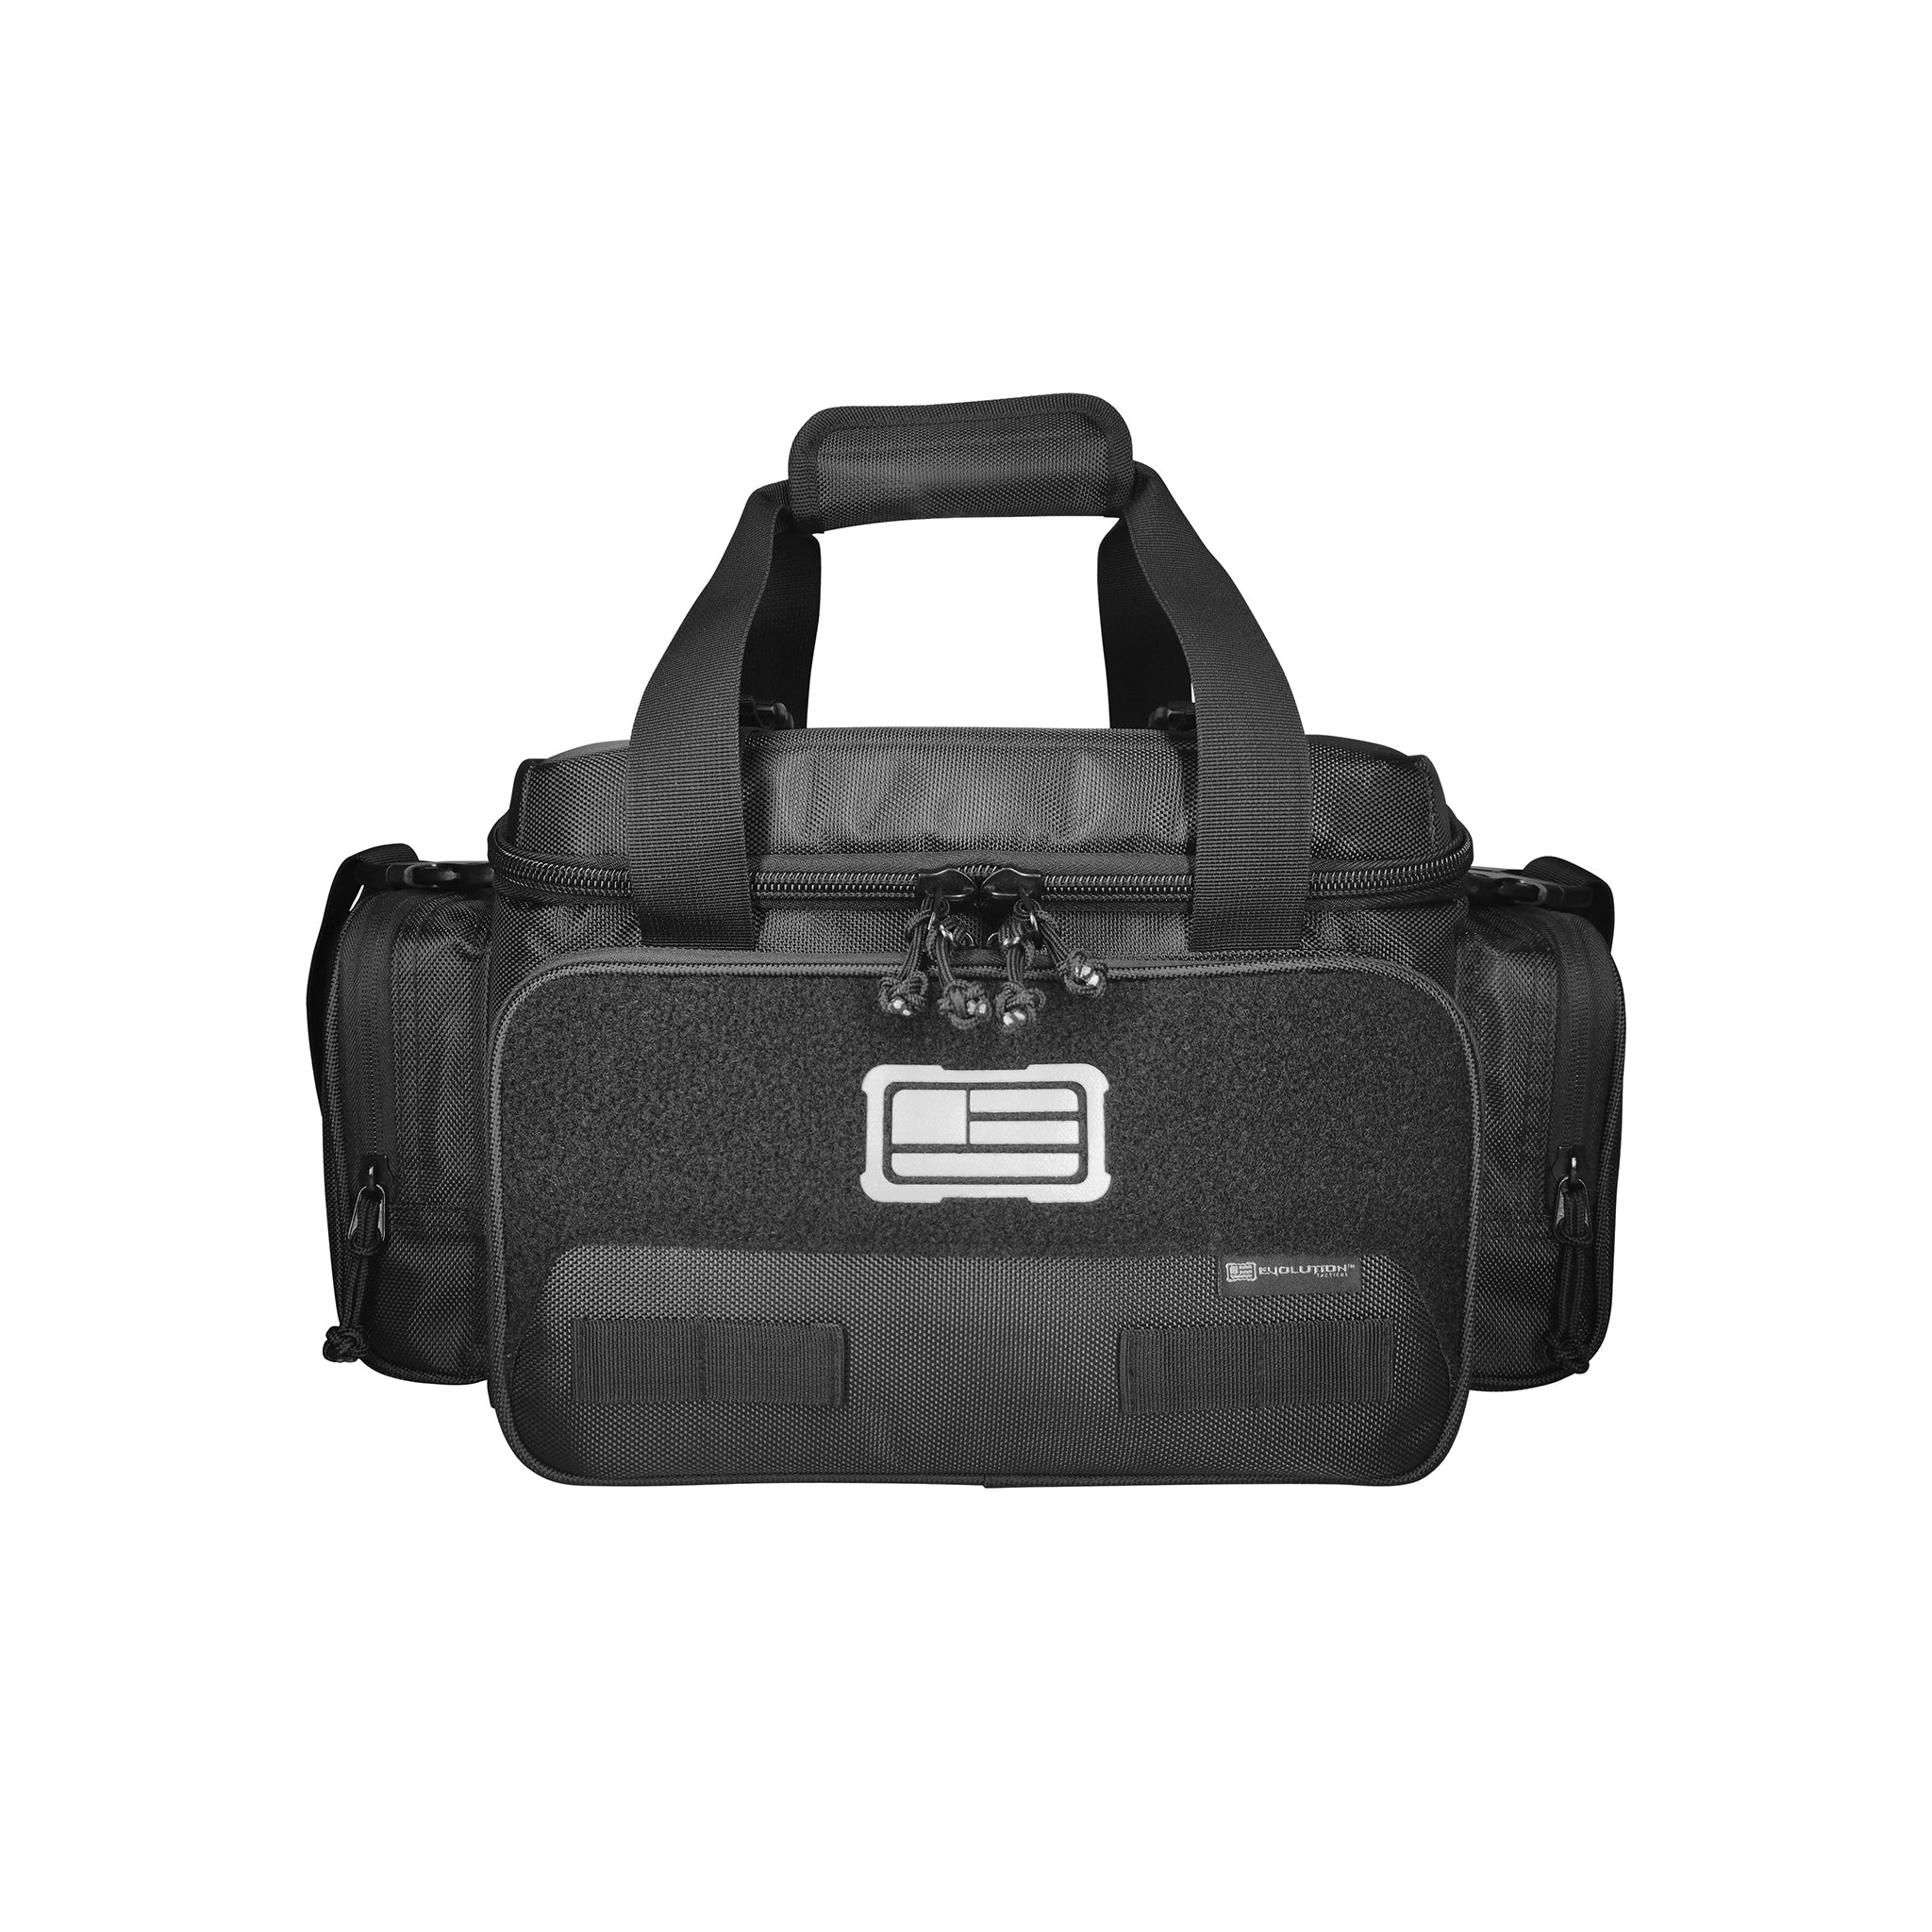 Tactical Range Bag - 1680D Tactical Series